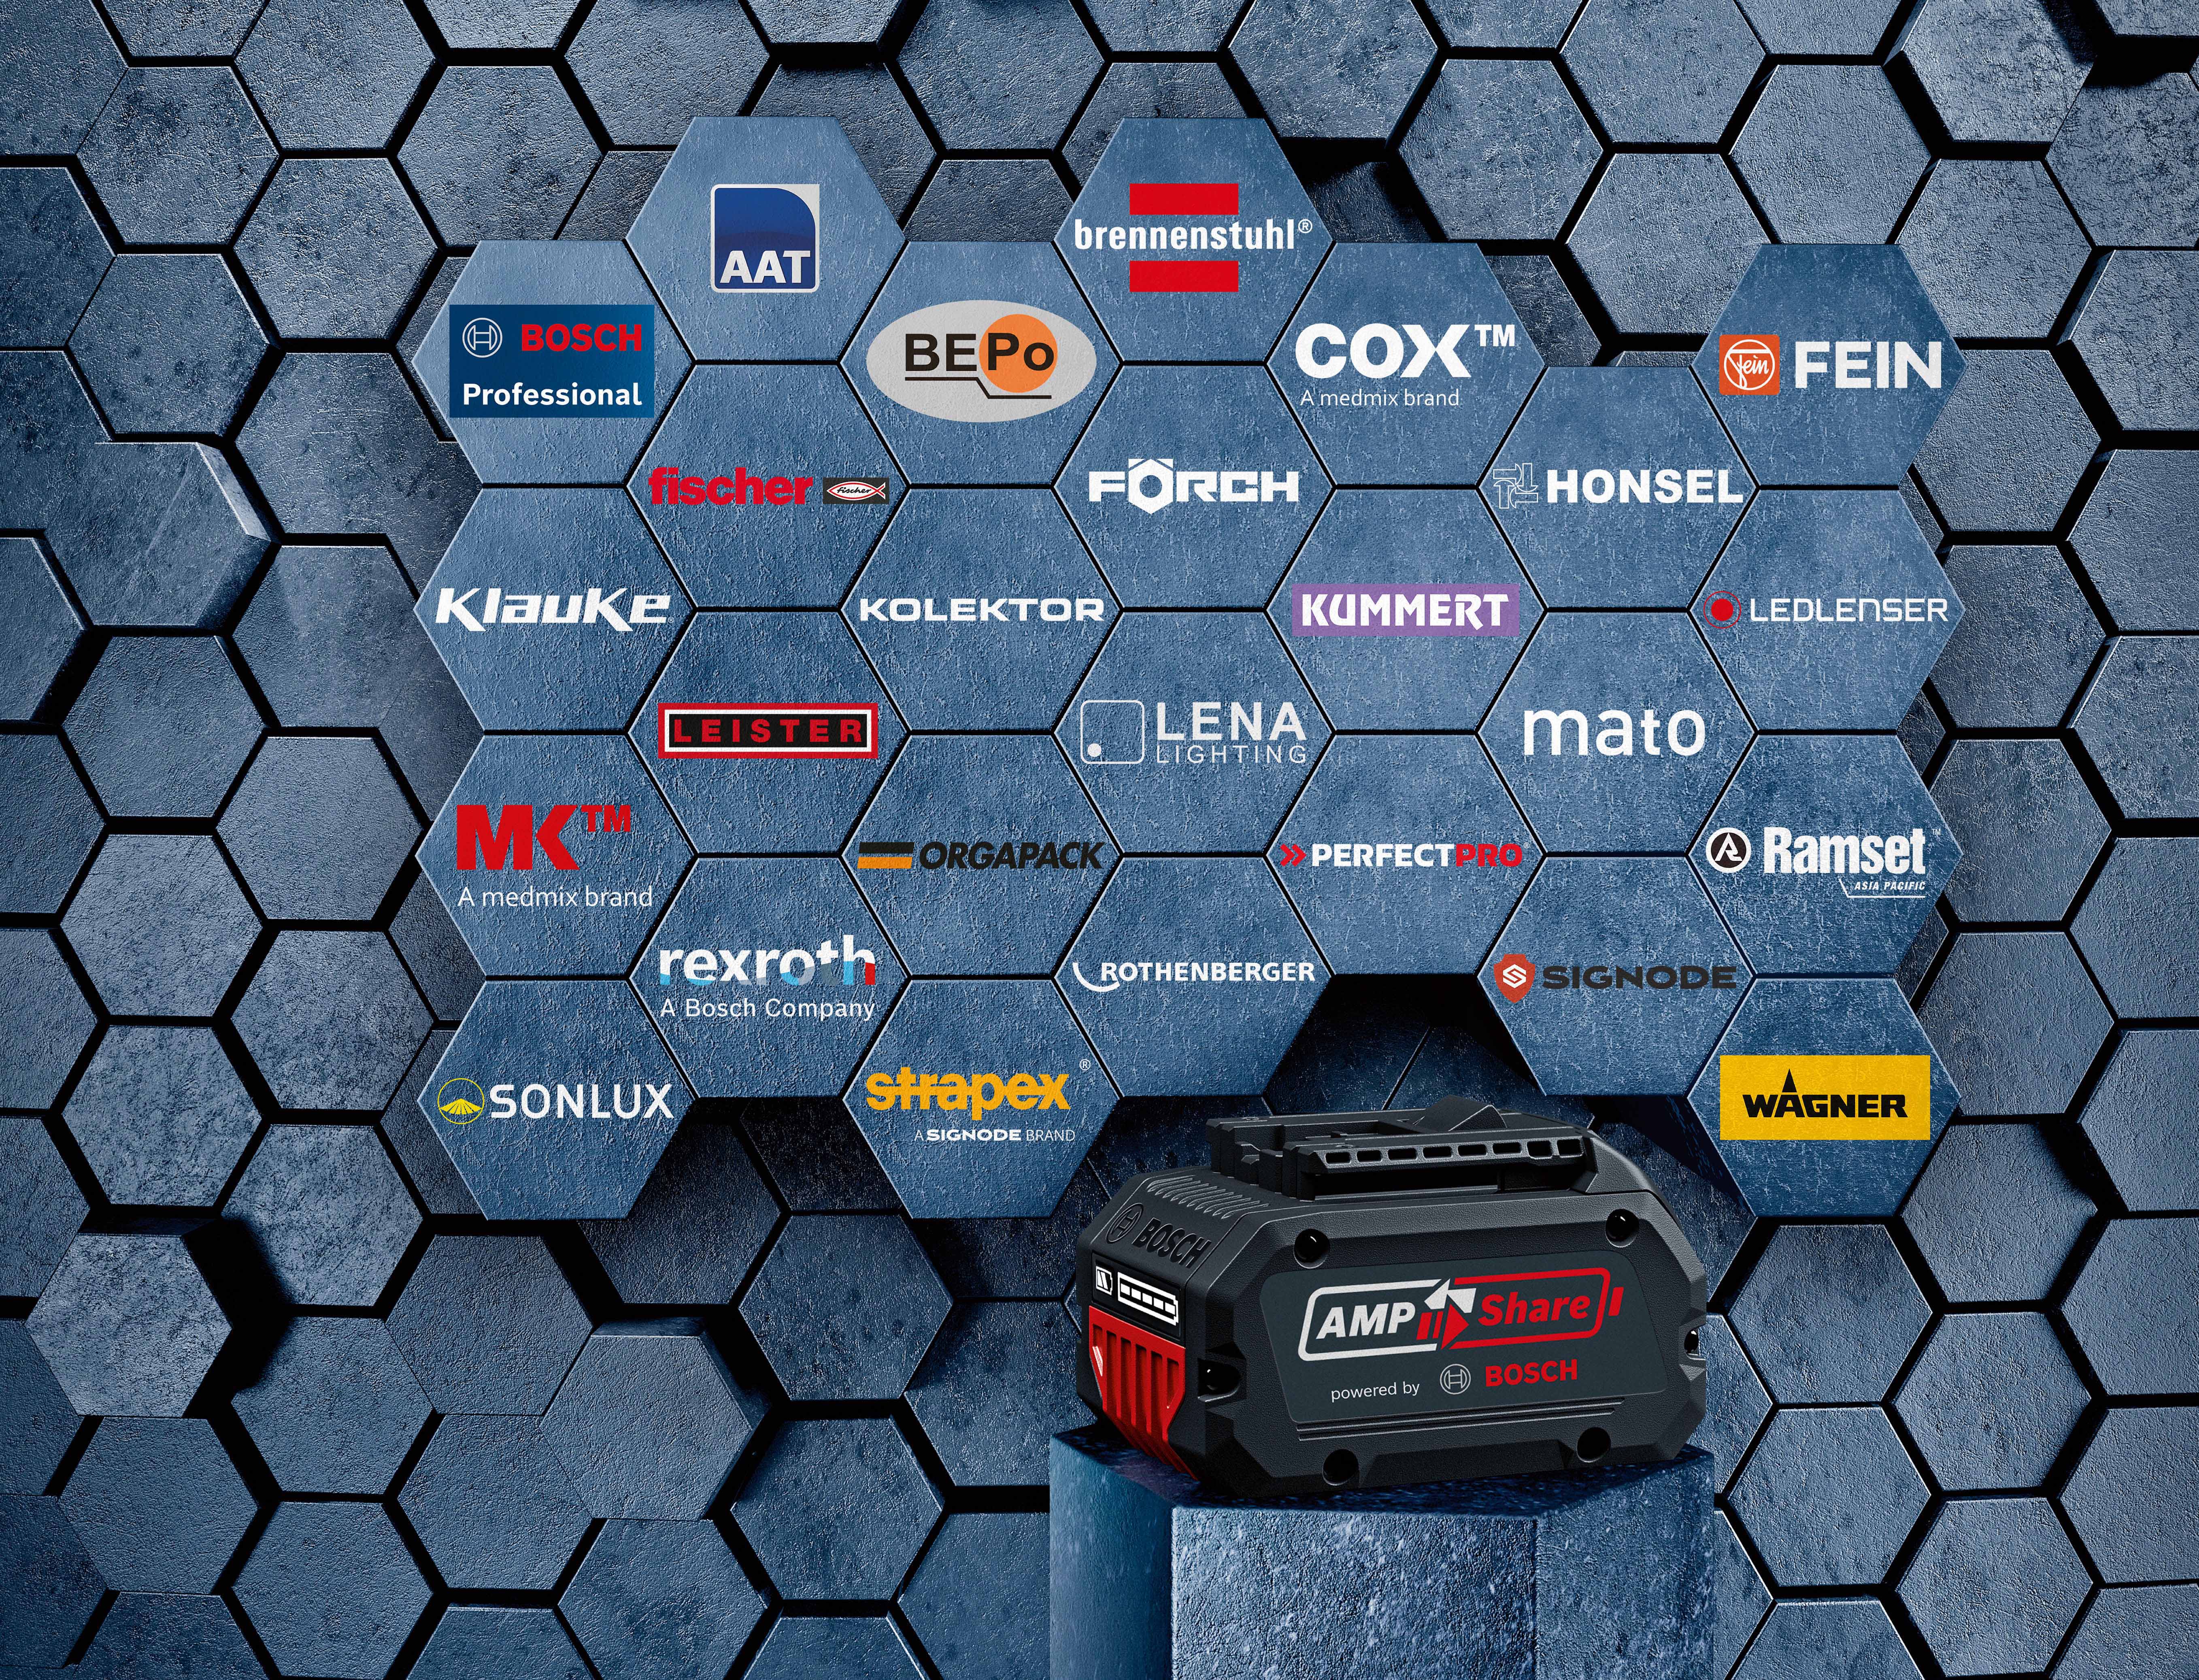 Akku-System für Profis wächst auf mehr als 25 Marken: AmpShare powered by Bosch